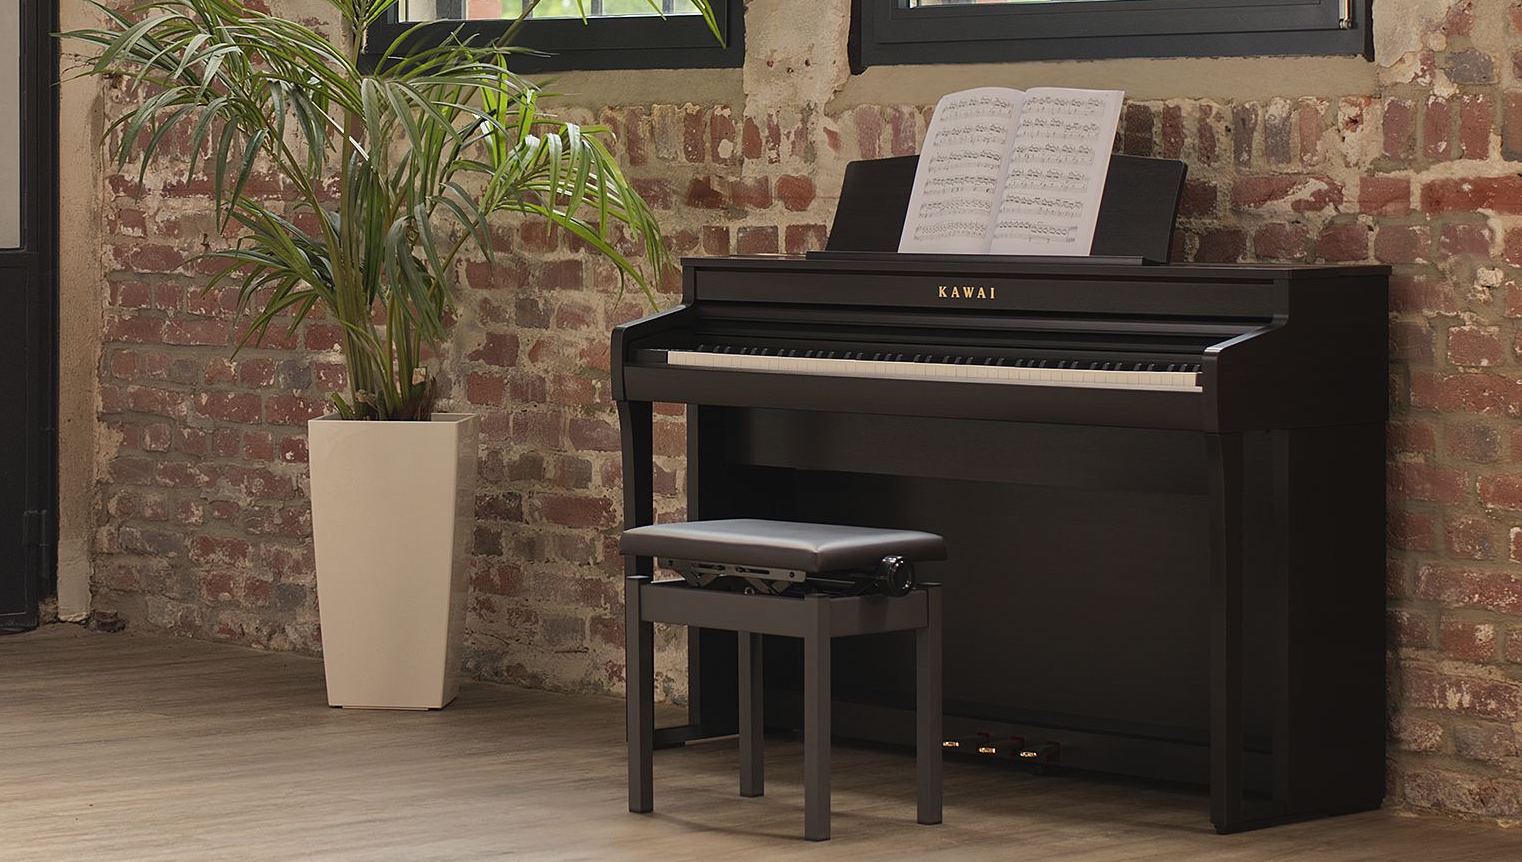 En Drunkat, te ofrecemos un catálogo completo de pianos Kawai, uno de los fabricantes más reconocidos del mundo, con el mejor precio y garantía.